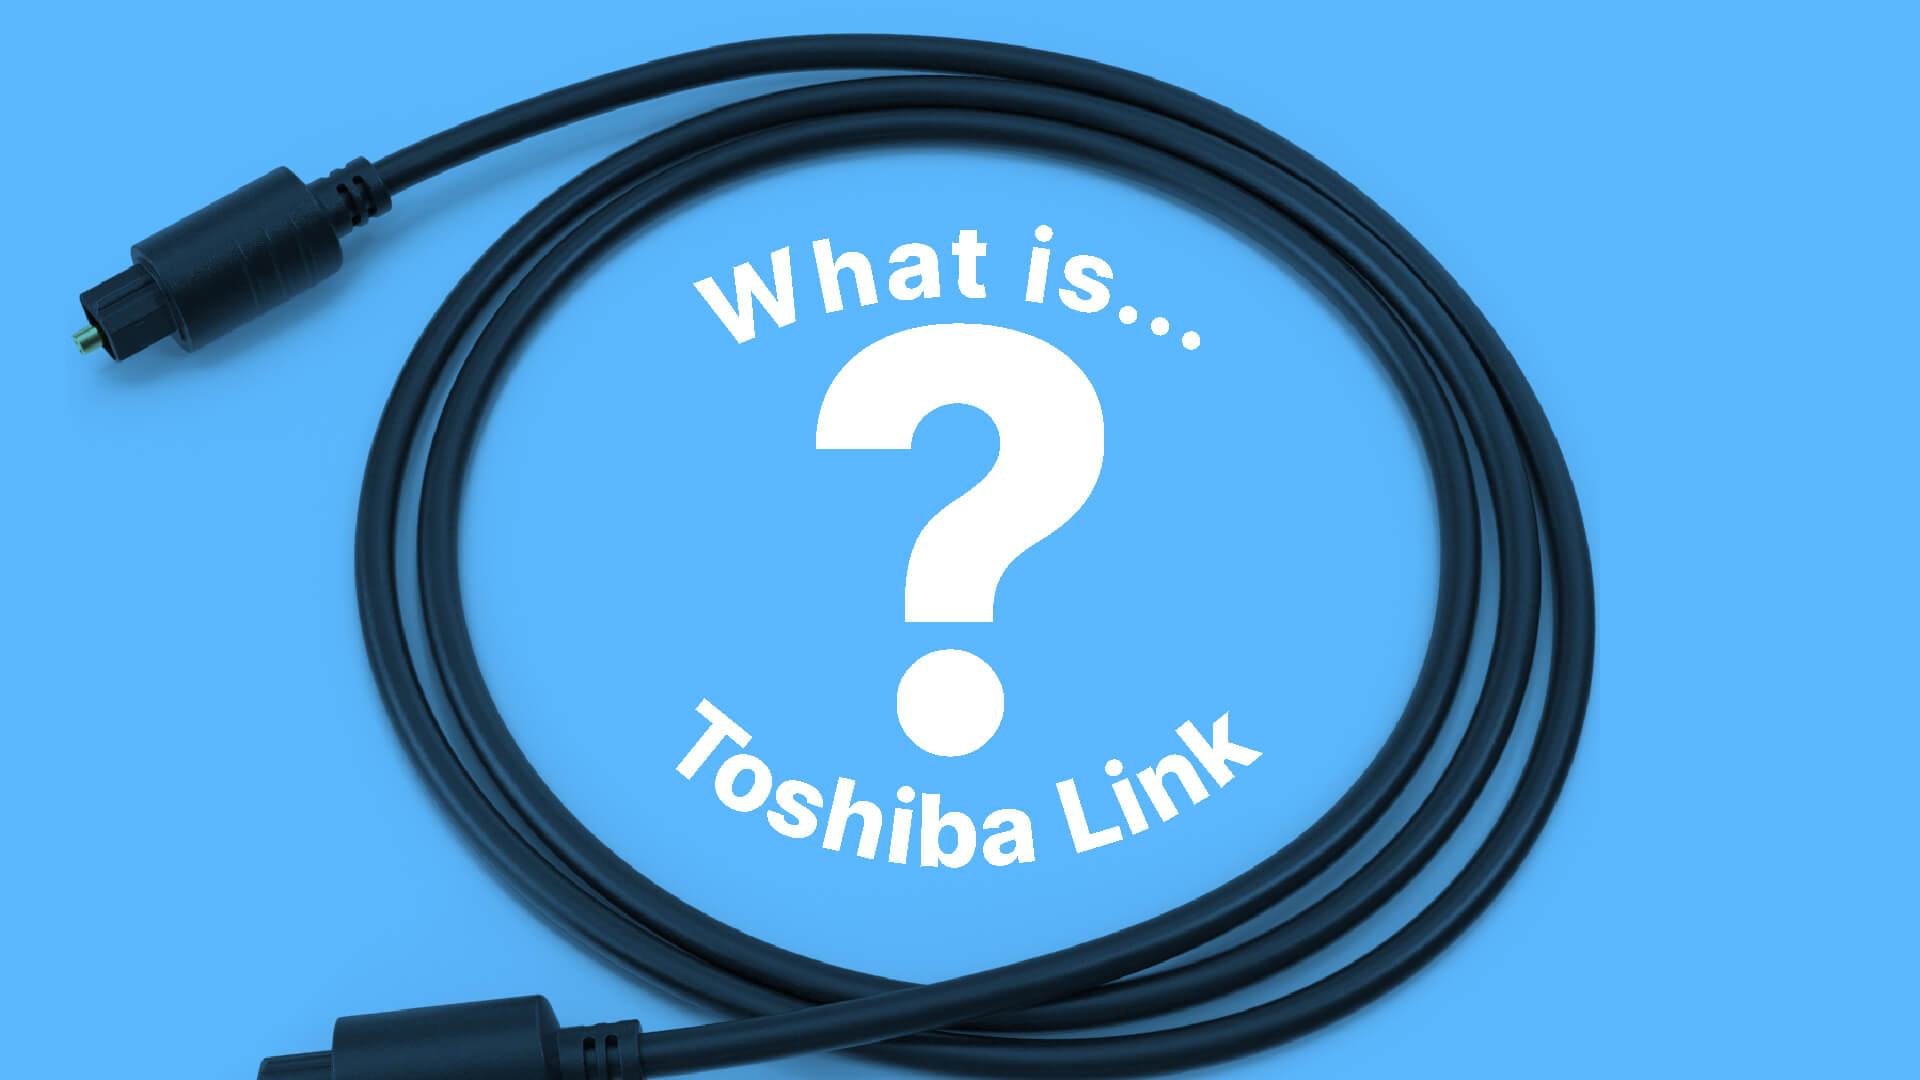 Toshiba Link